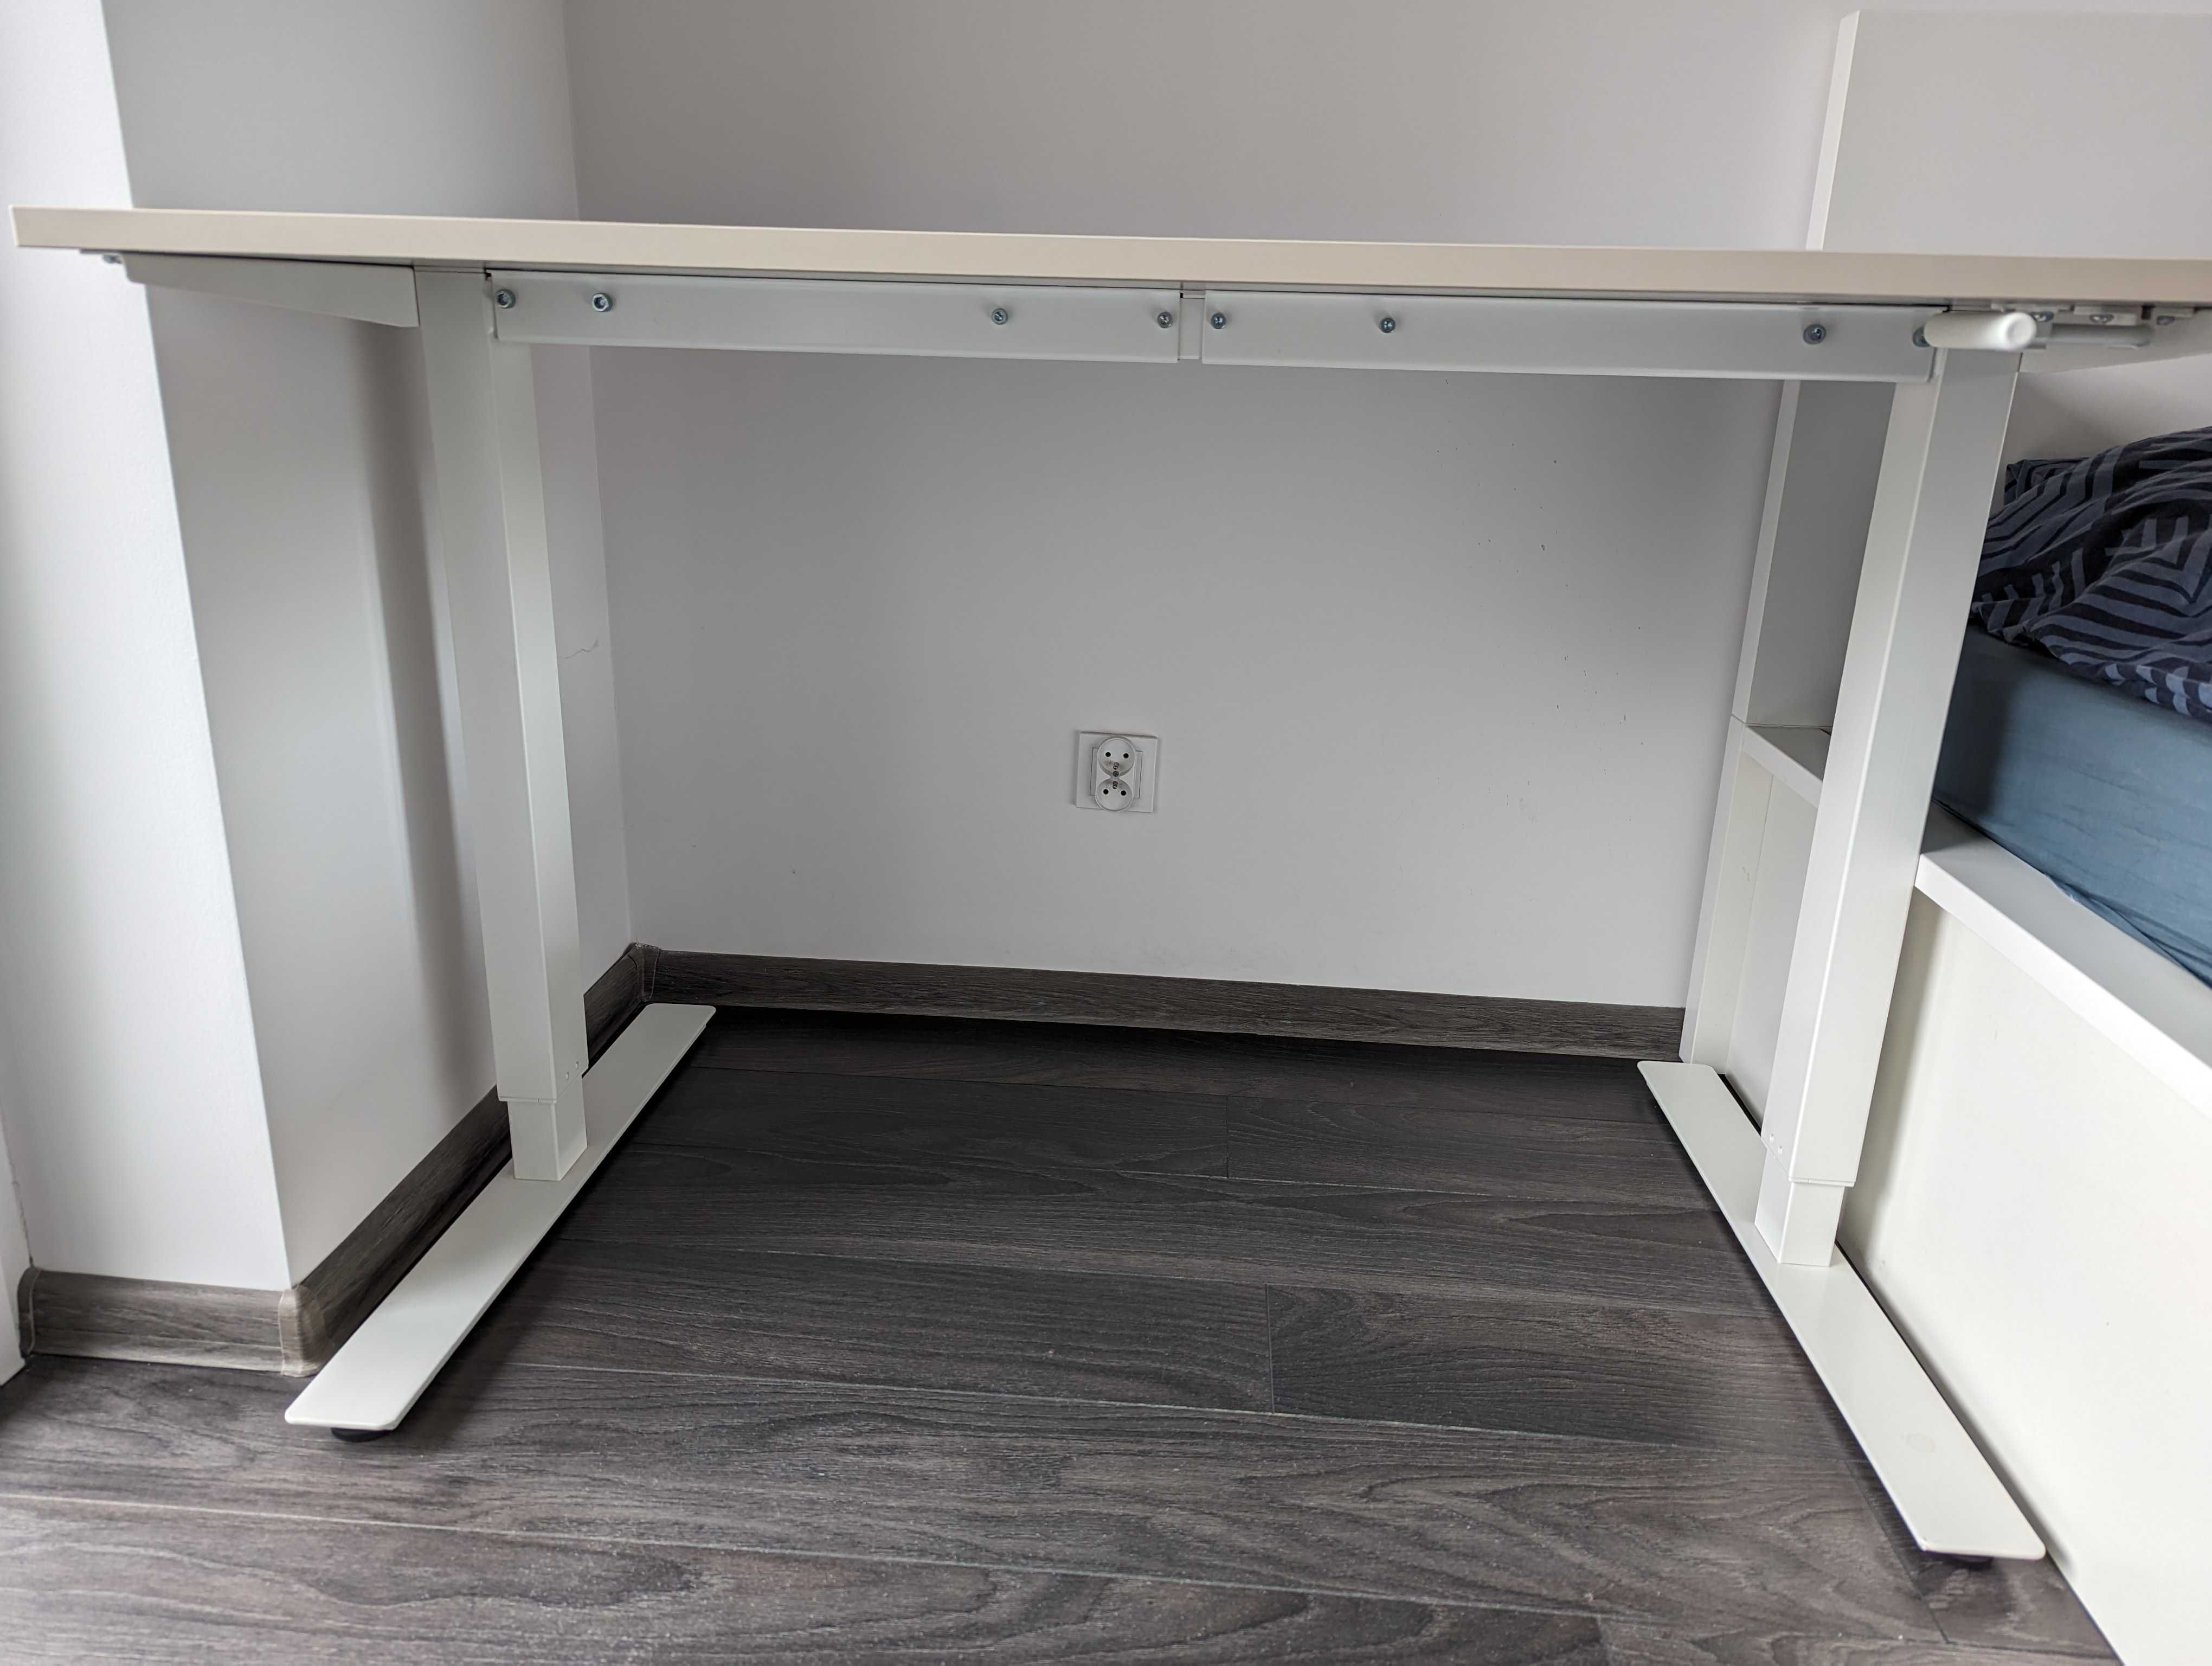 Стіл з регулюванням висоти IKEA TROTTEN (для роботи стоячи) 70-120 см